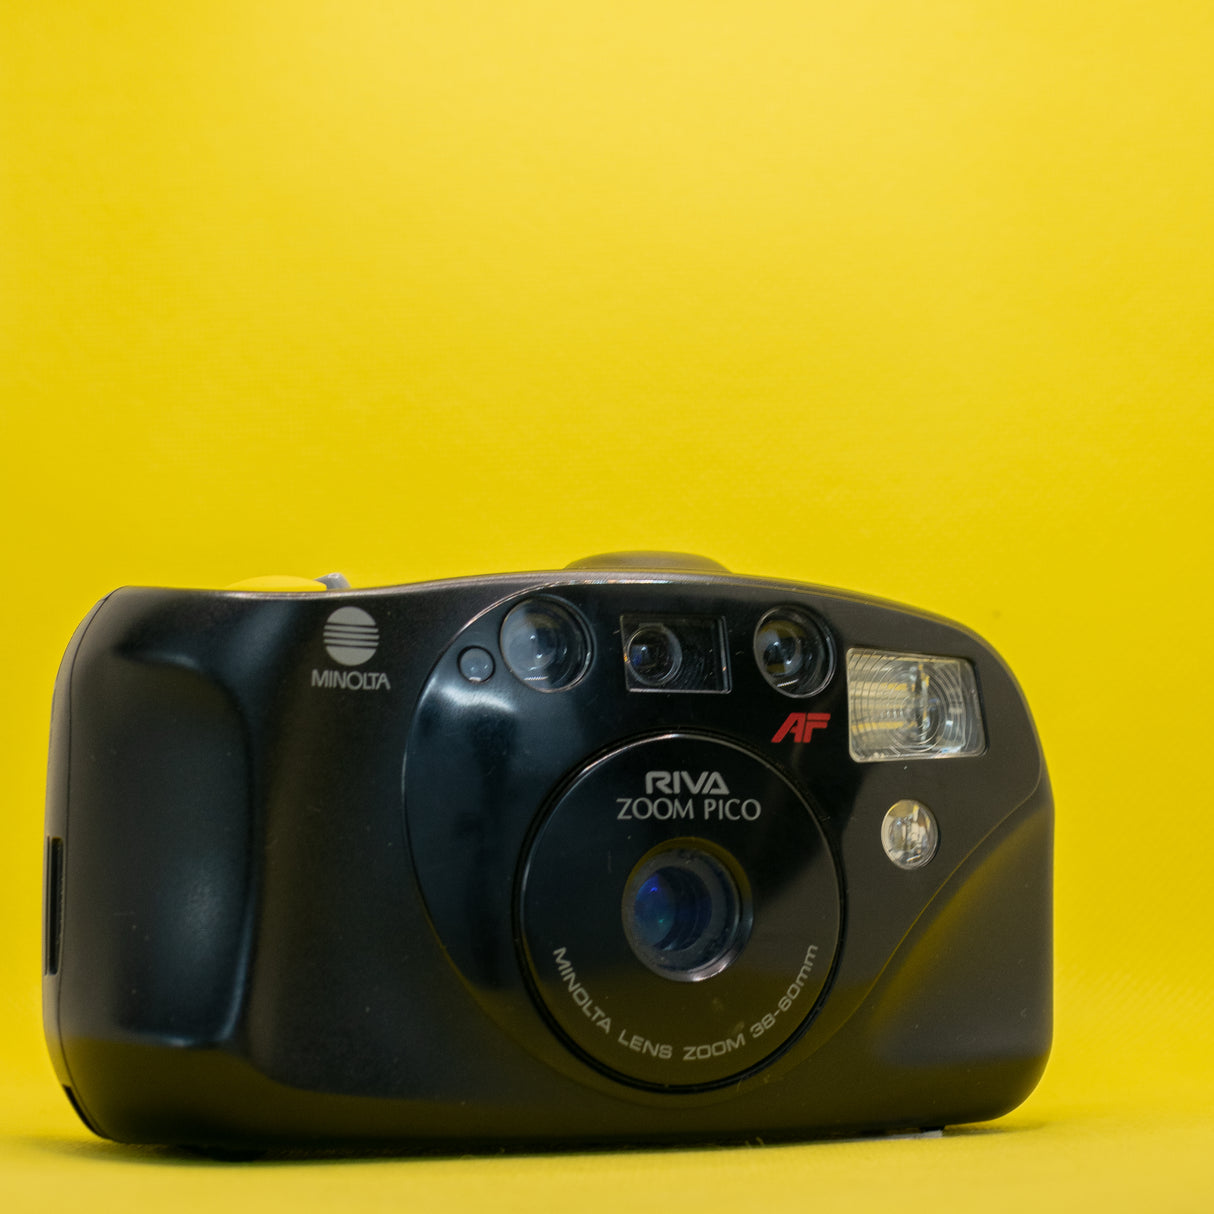 Minolta Riva Zoom Pico - 35mm Compact Film Camera